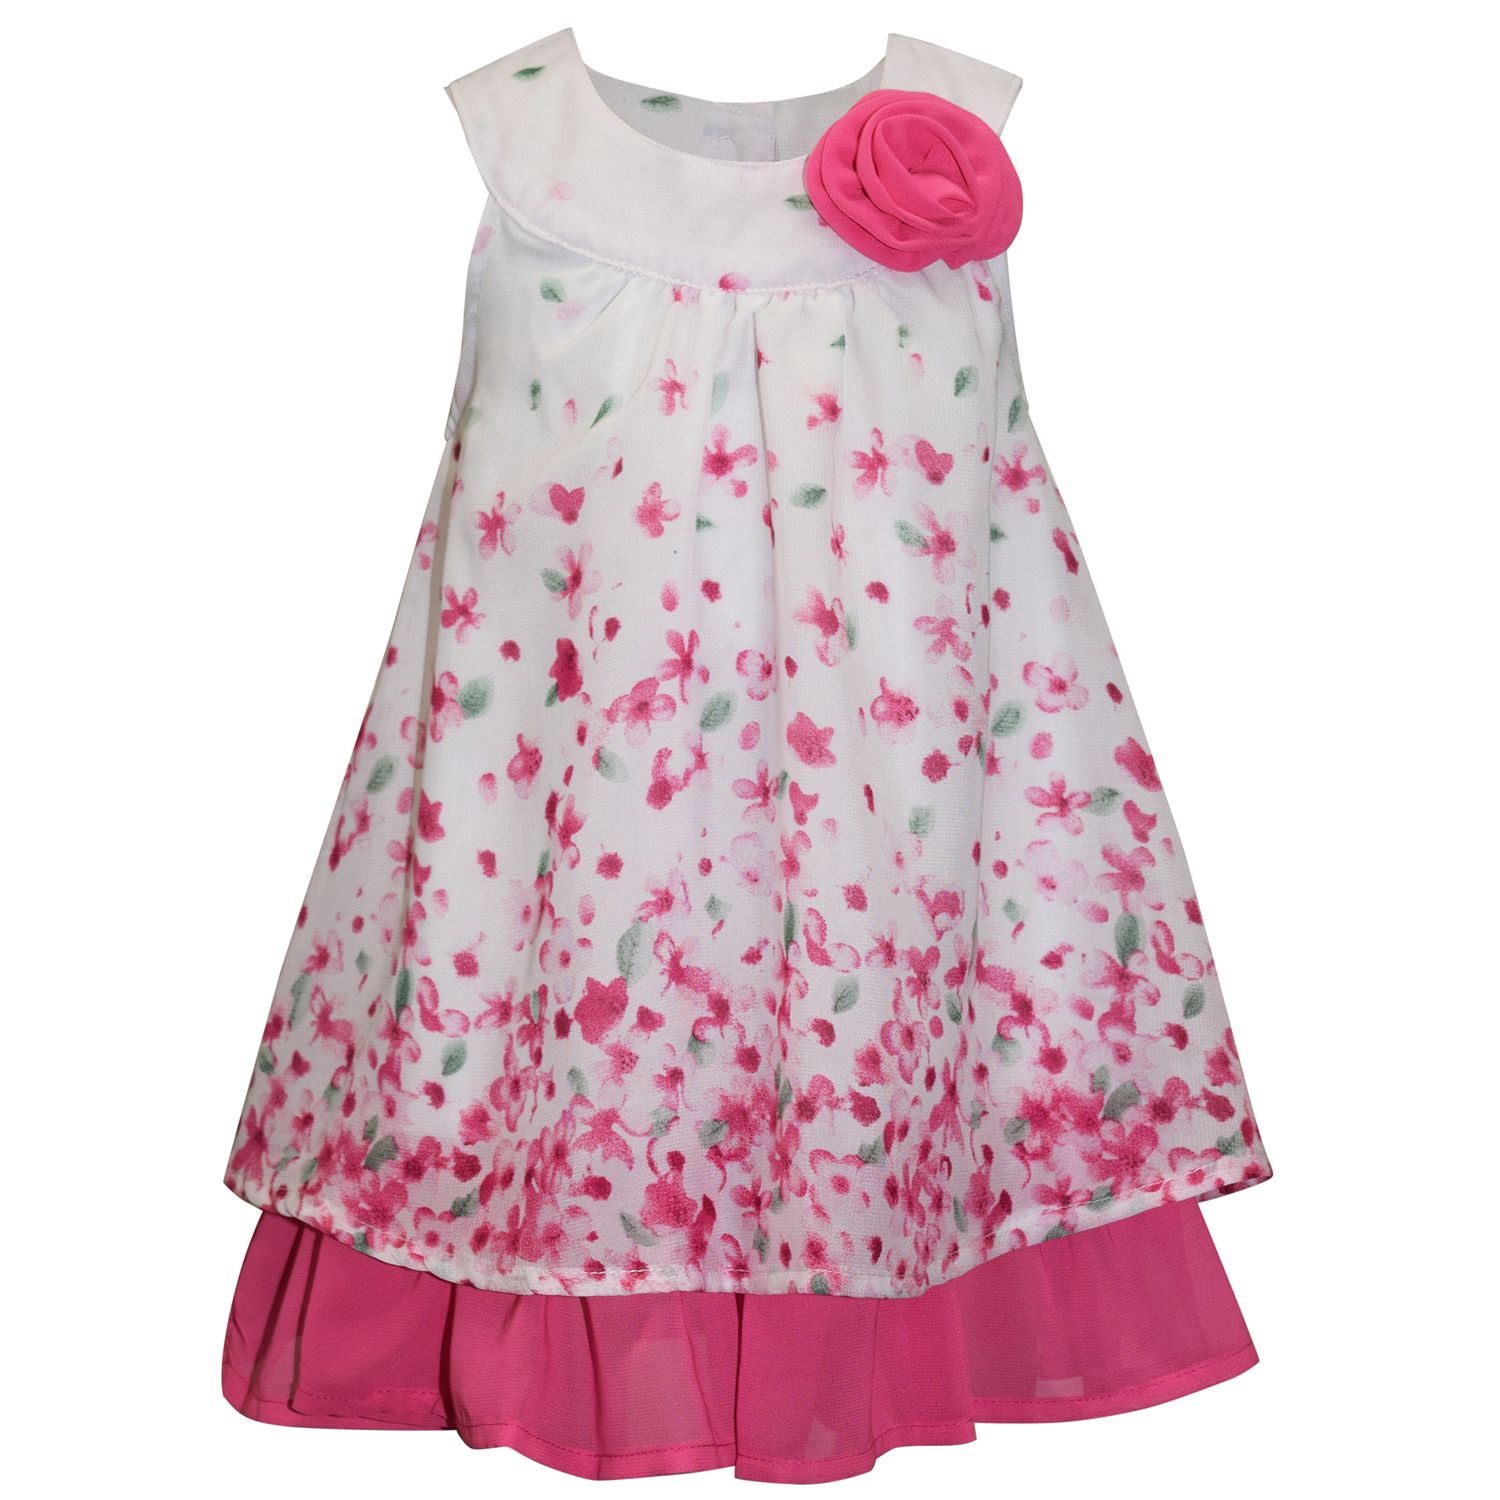 chiffon dress for little girl